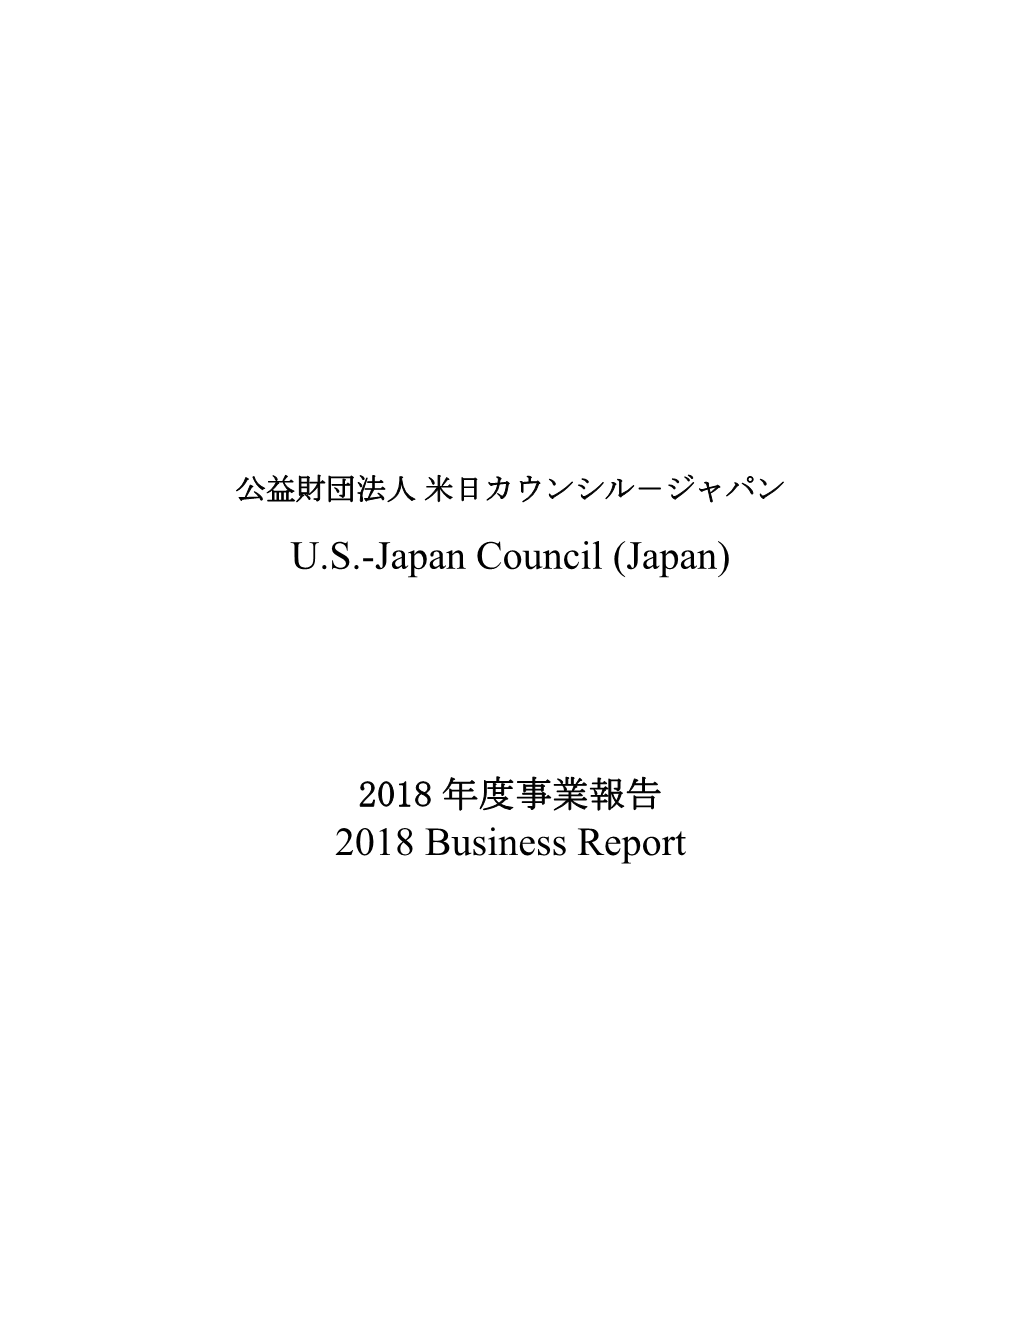 U.S.-Japan Council (Japan) 2018 Business Report